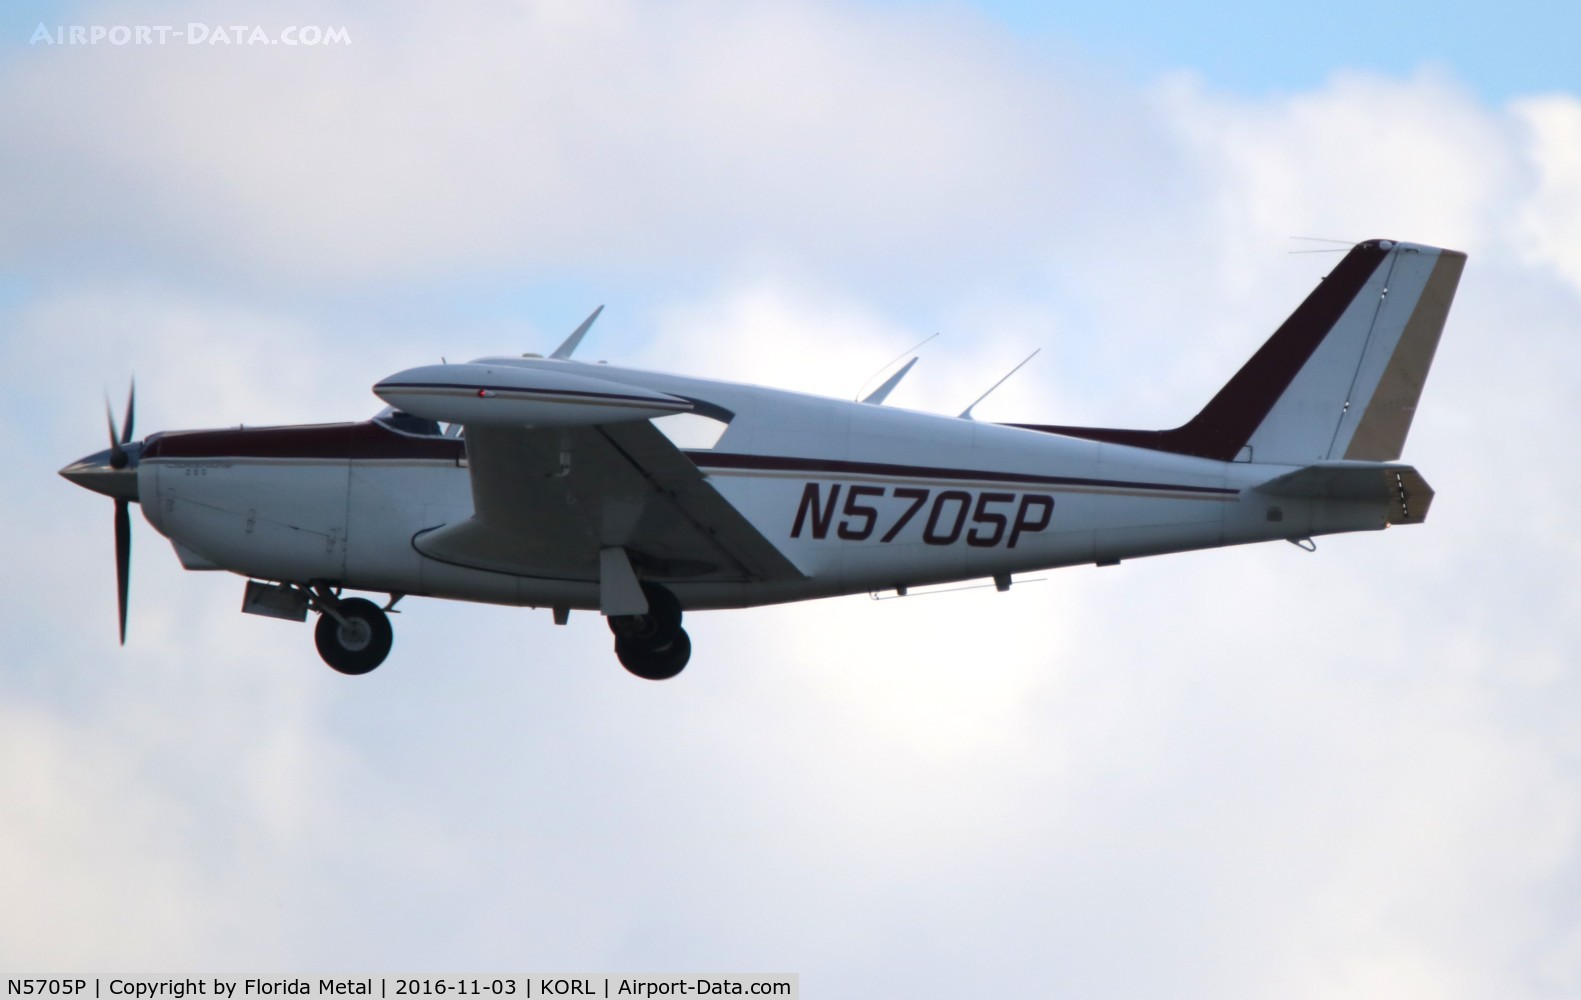 N5705P, 1959 Piper PA-24-250 Comanche C/N 24-778, PA-24